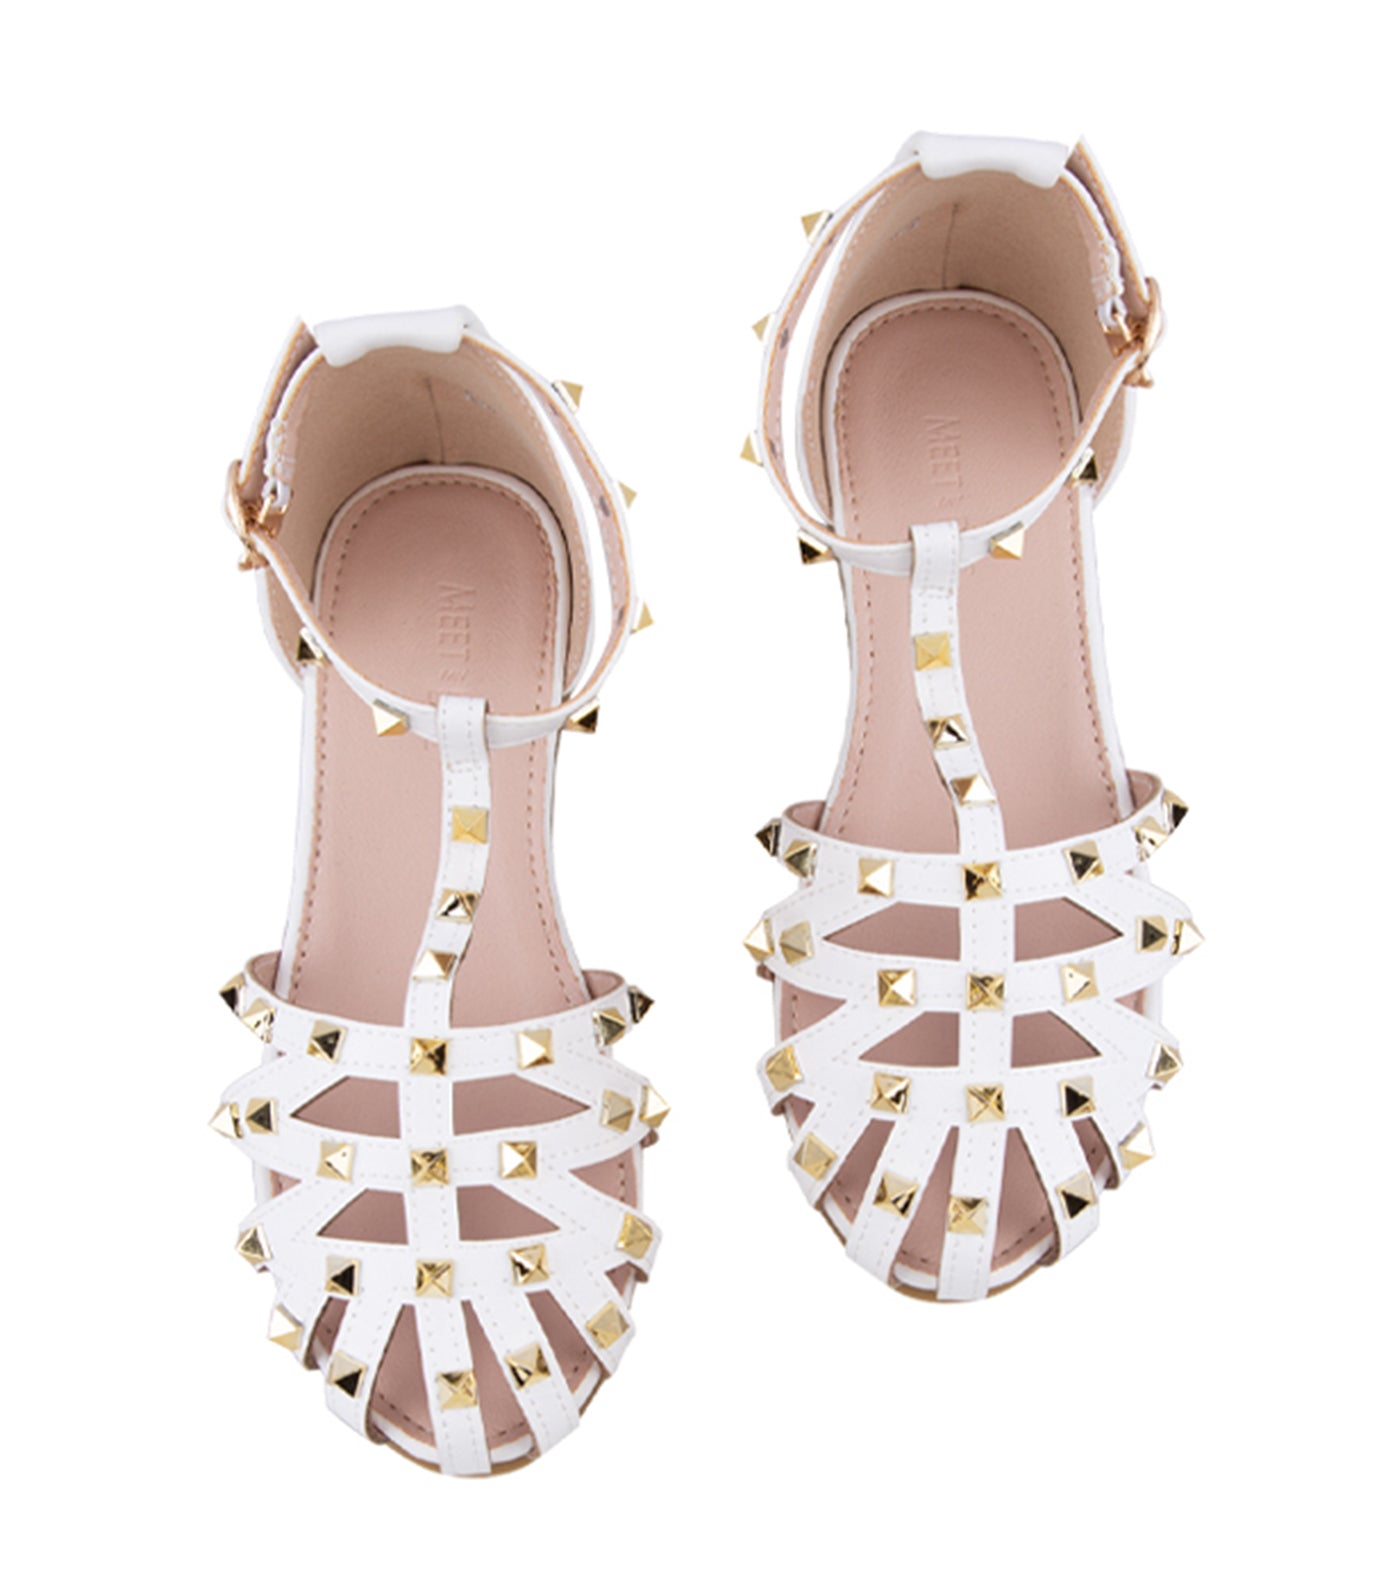 Brana Kids Sandals for Girls - White